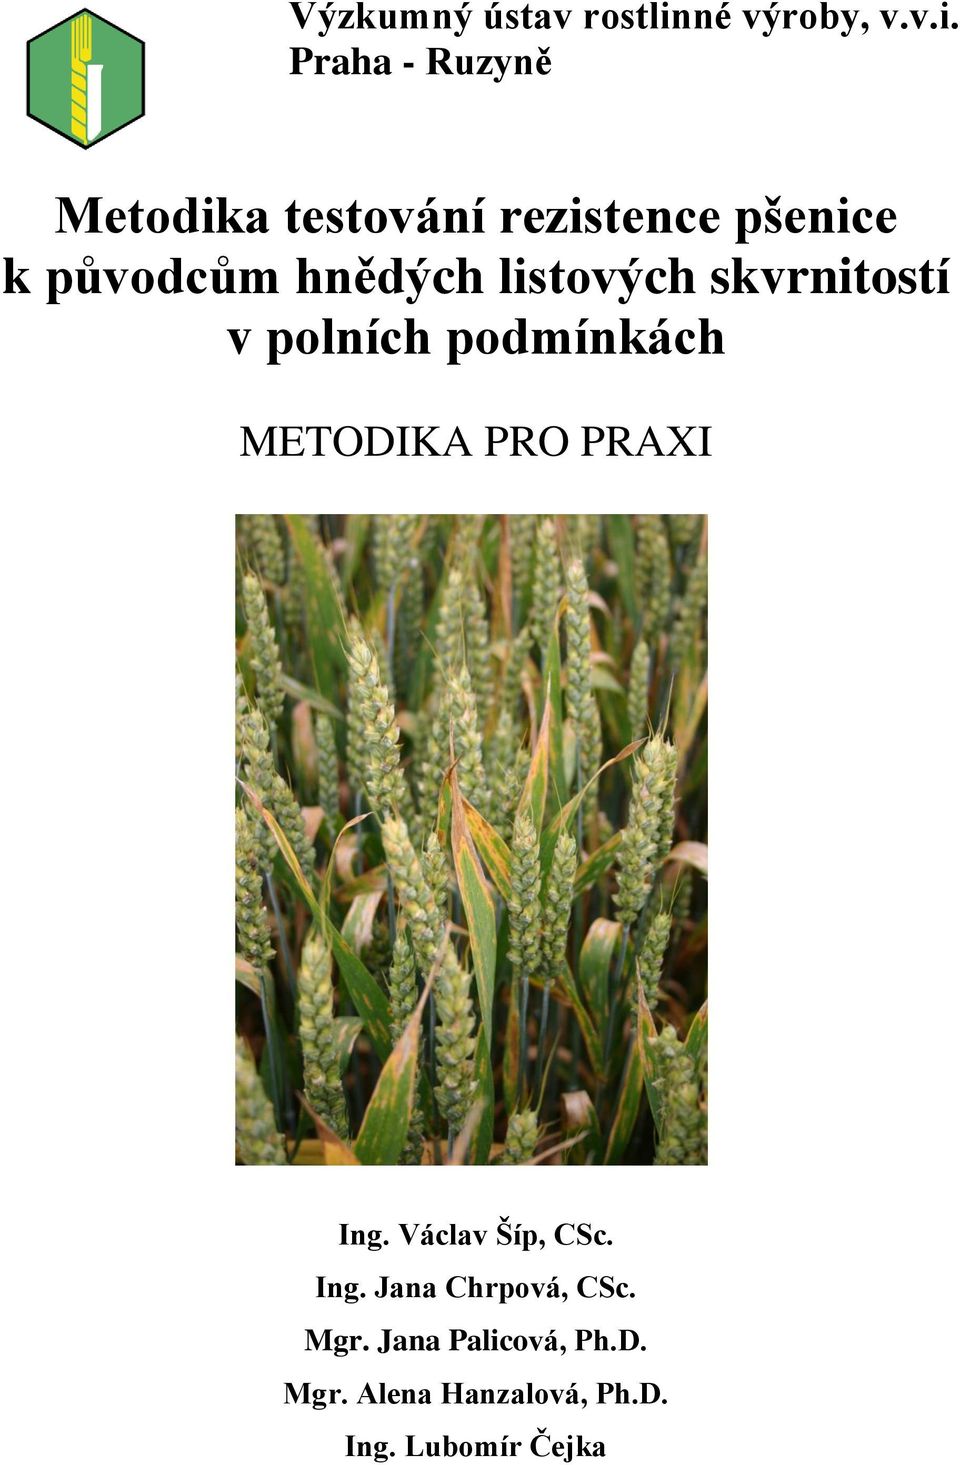 Praha - Ruzyně Metodika testování rezistence pšenice k původcům hnědých